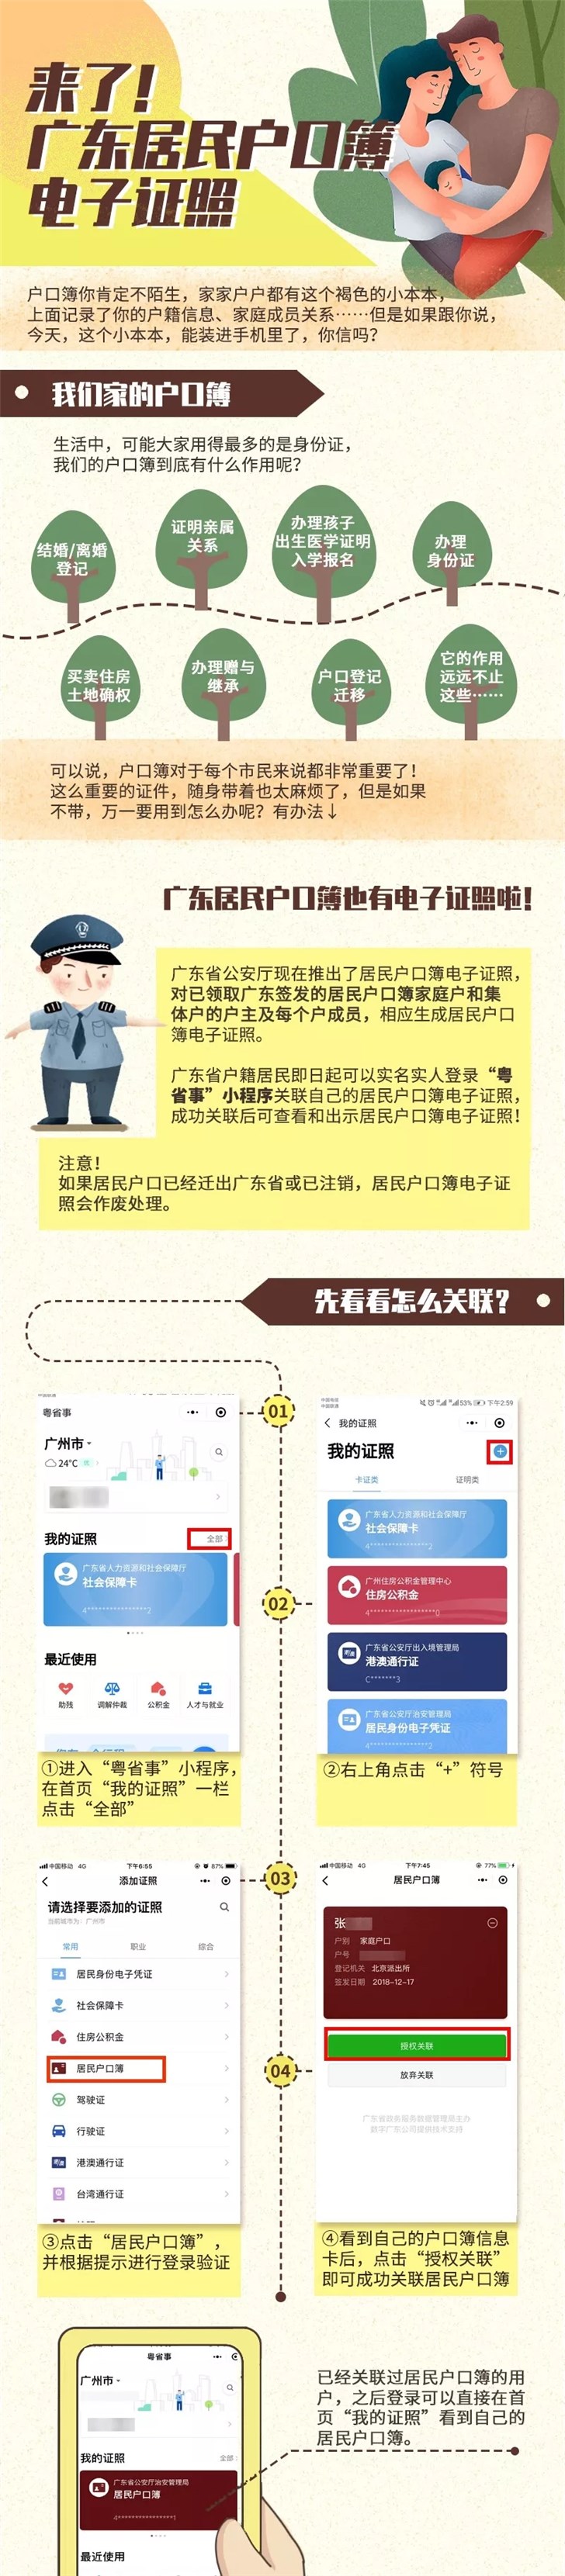 纸质户口本或将成为历史  广东推居民户口簿电子证照